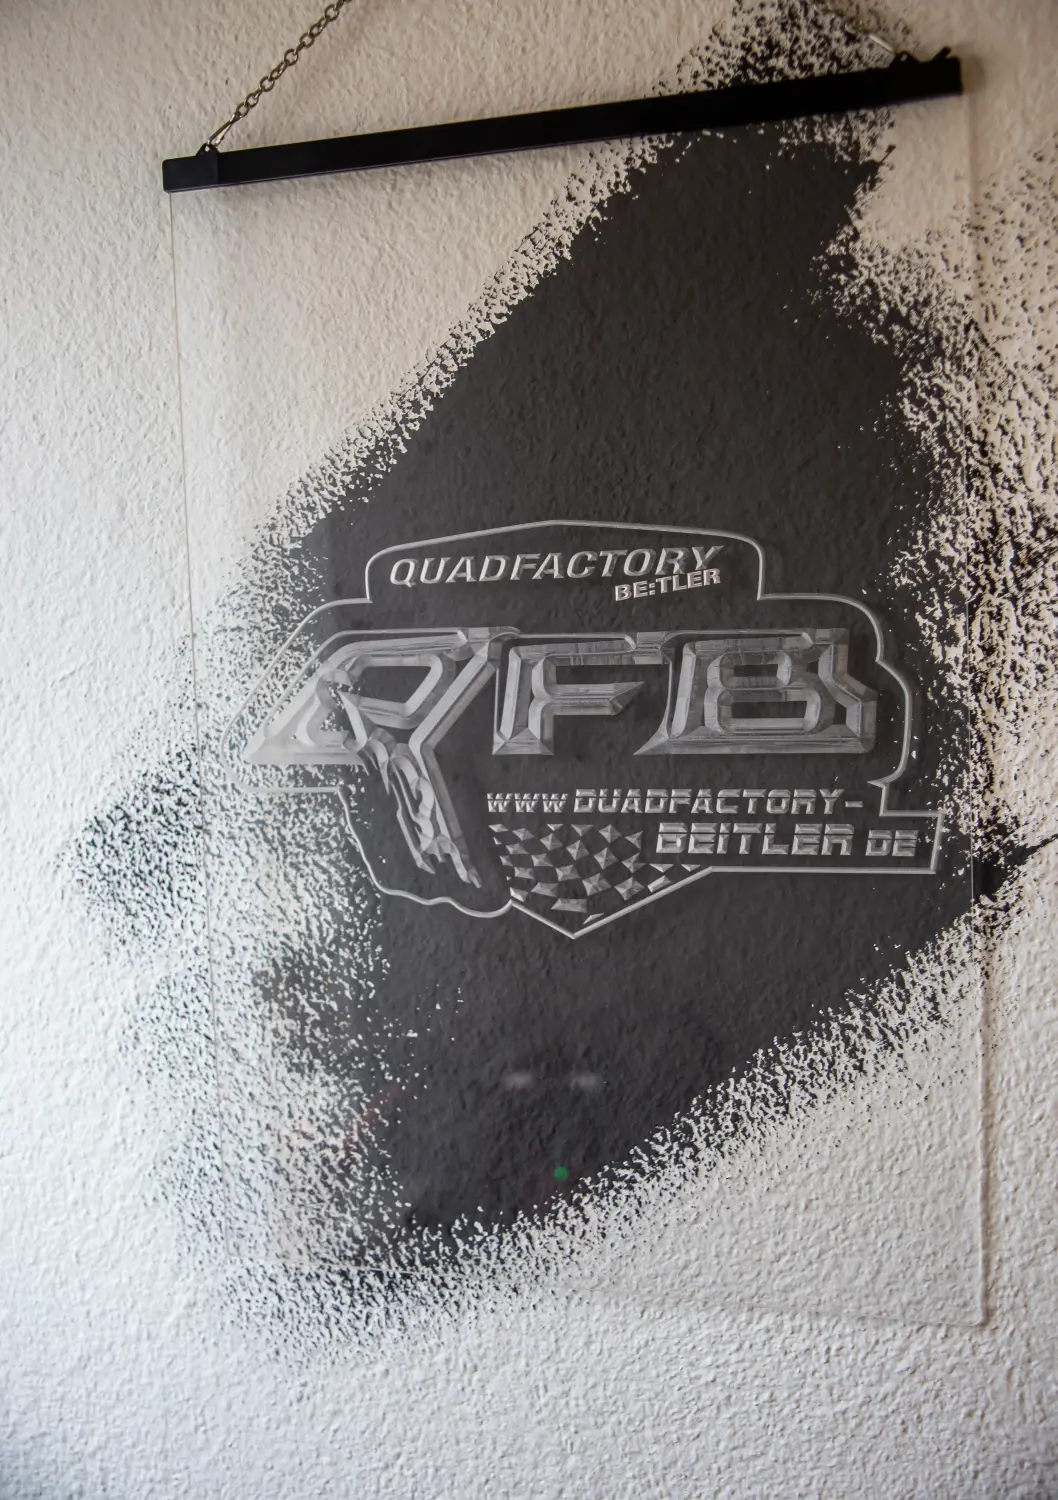 Quadfactory Beitler, Schwarzes Graffiti an der Wand